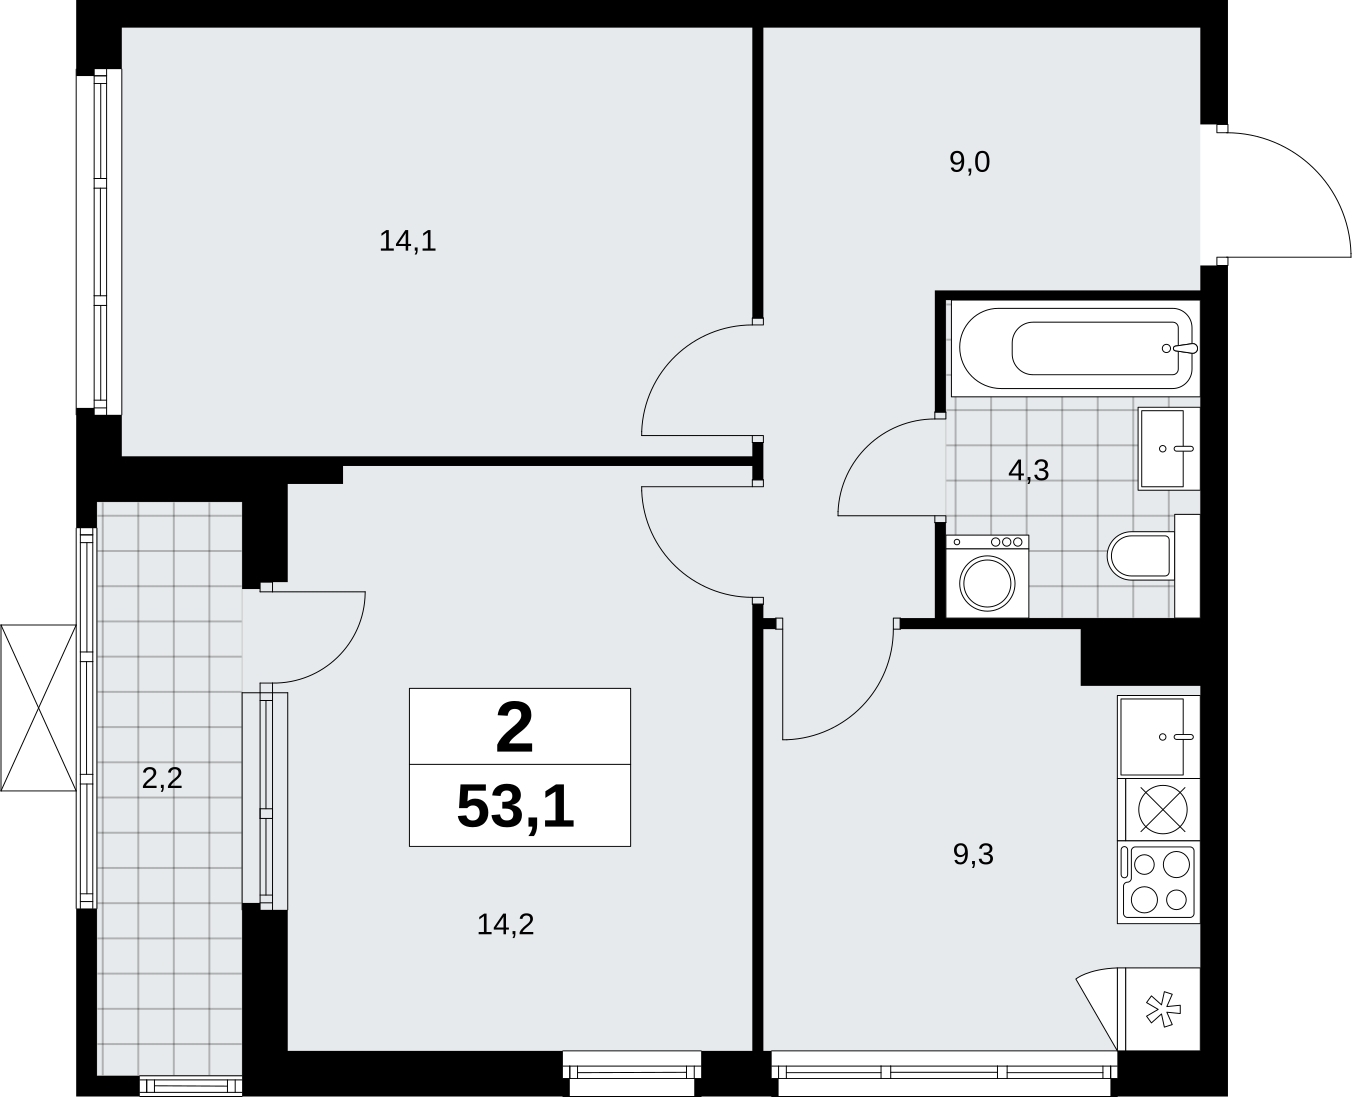 Продается двухкомнатная квартира с отделкой в новом ЖК, у метро